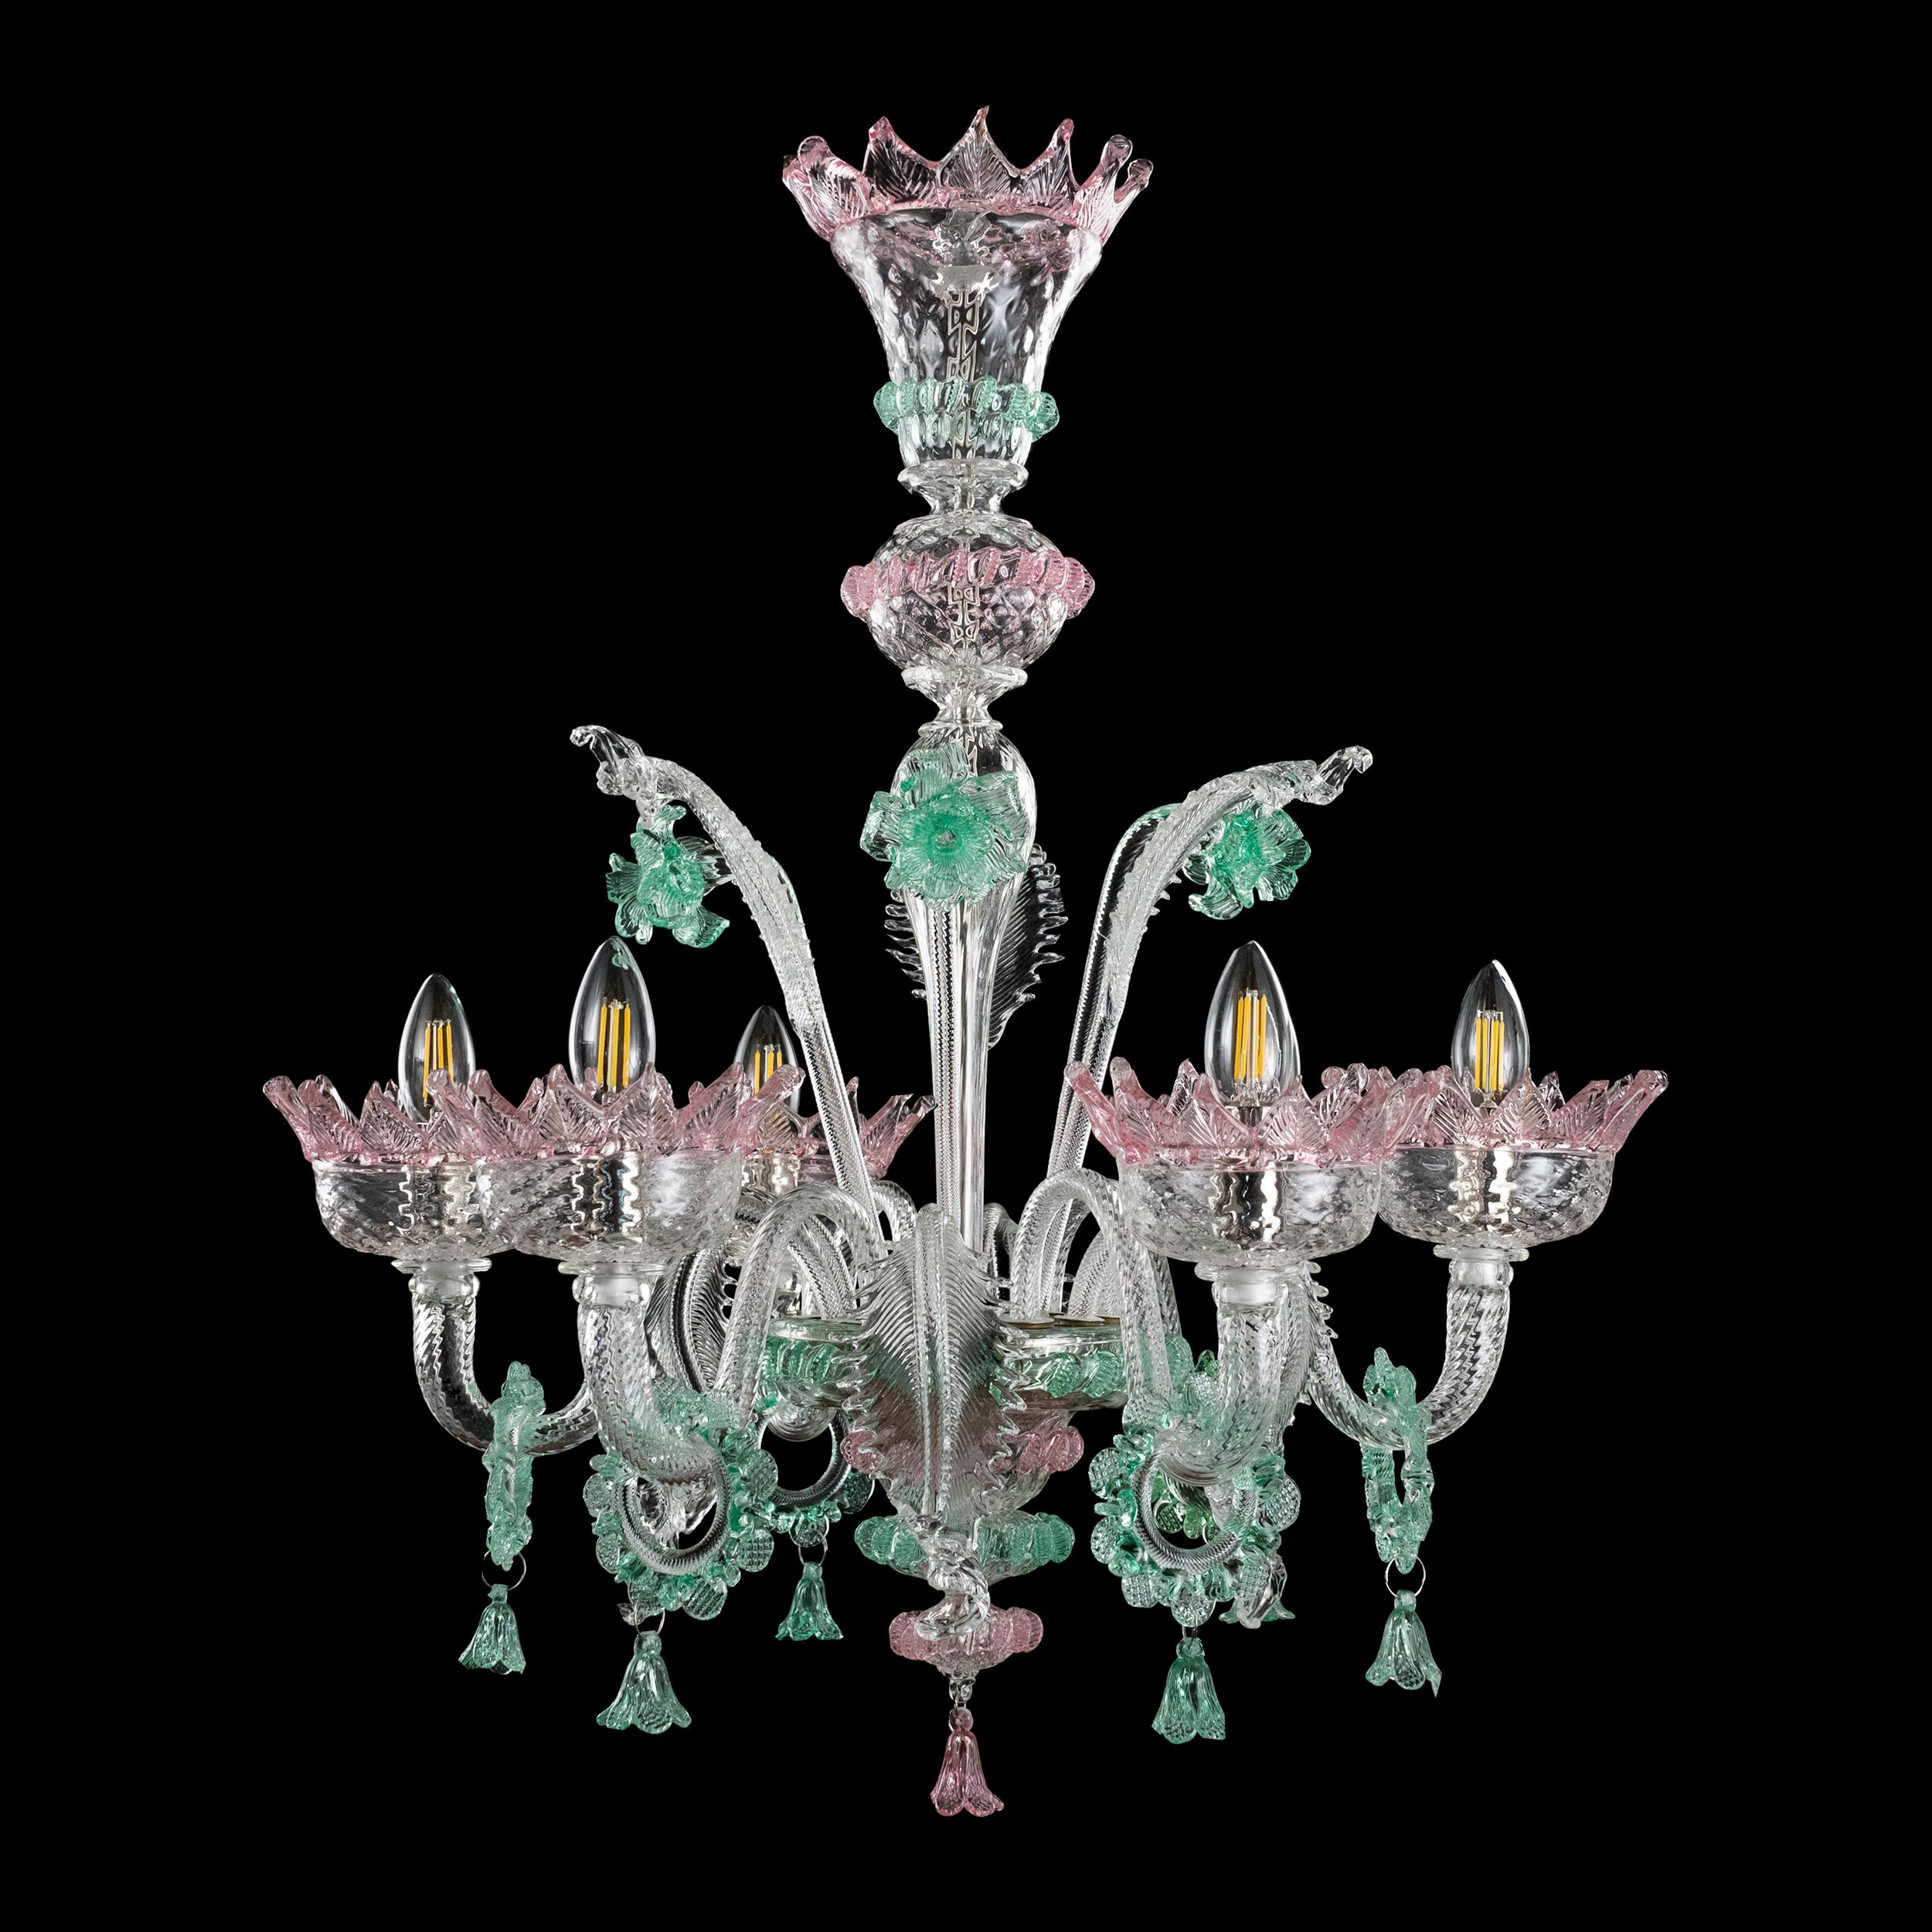 Der klassische Murano-Glaslüster, wie er in der kollektiven Vorstellung ist. Wie viele andere Kronleuchter aus unseren Kollektionen wurde auch V-Classic 800 mit viel Liebe zum Detail und mit der Leidenschaft entworfen, die uns auszeichnet. Jedes